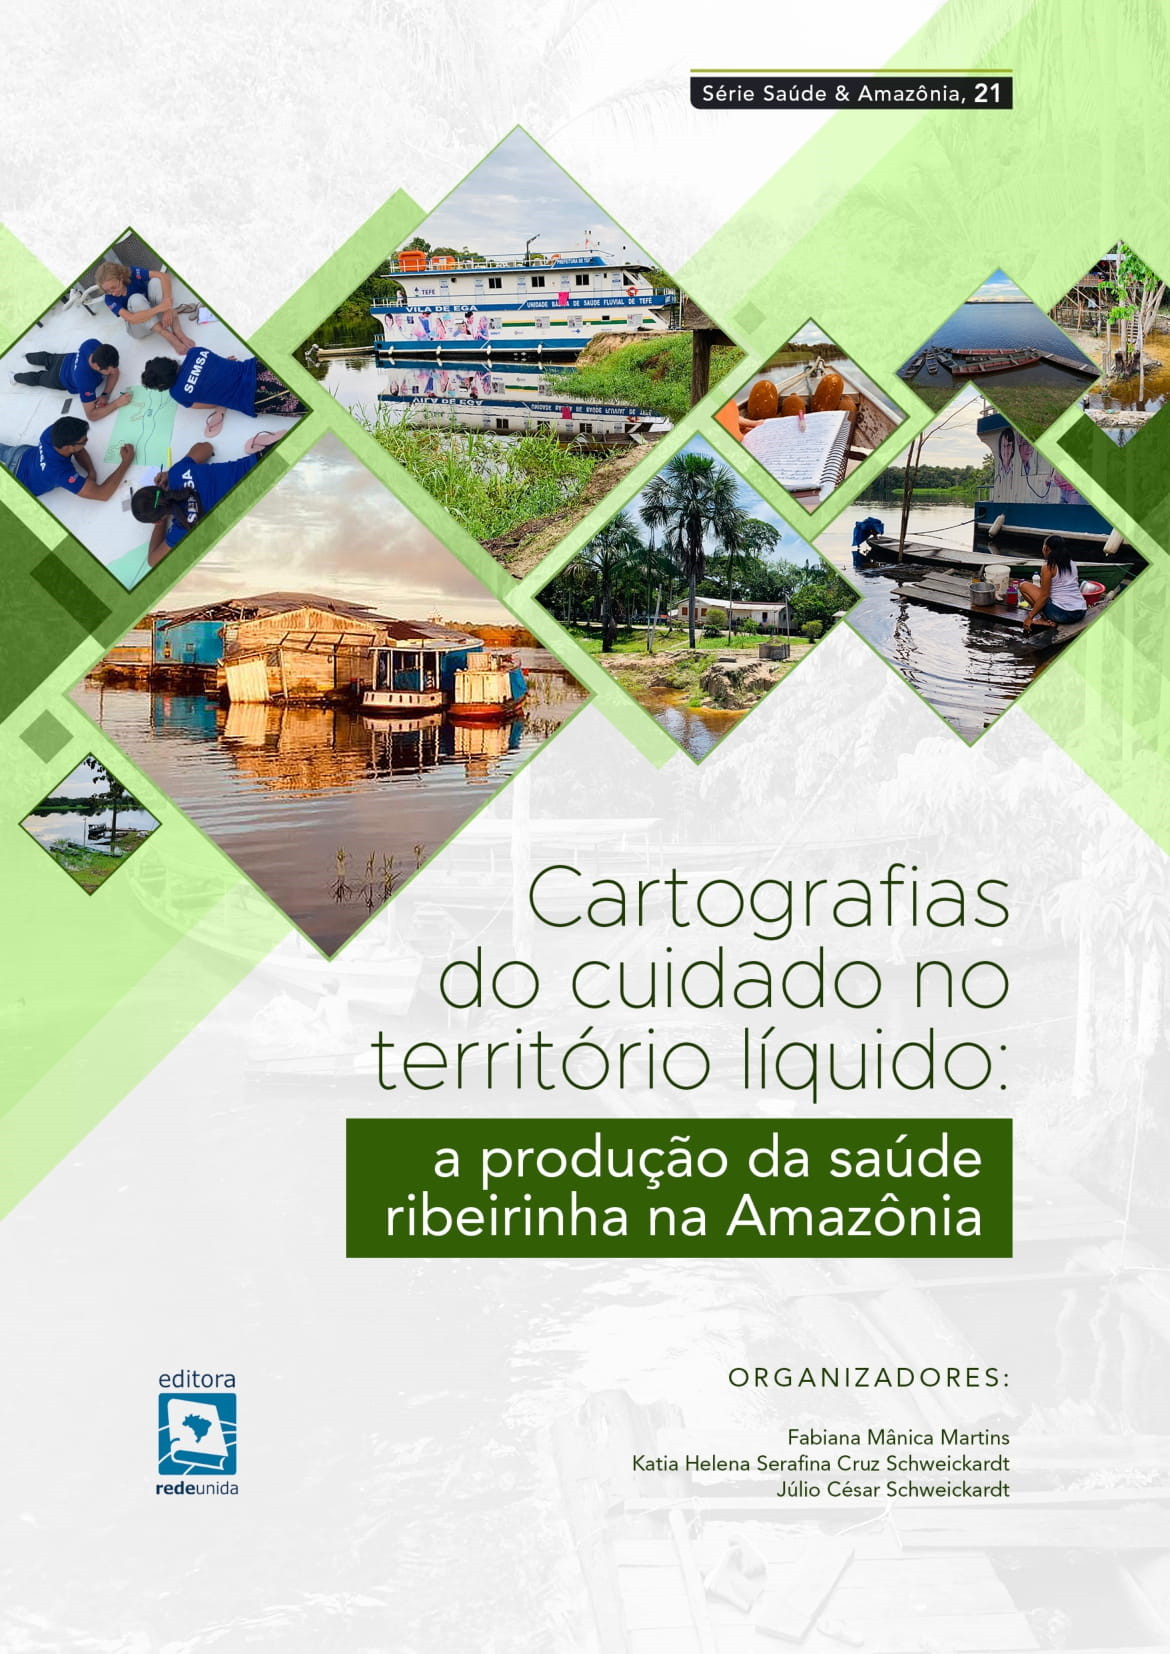 Cartografias do cuidado no território líquido: a produção da saúde ribeirinha na Amazônia